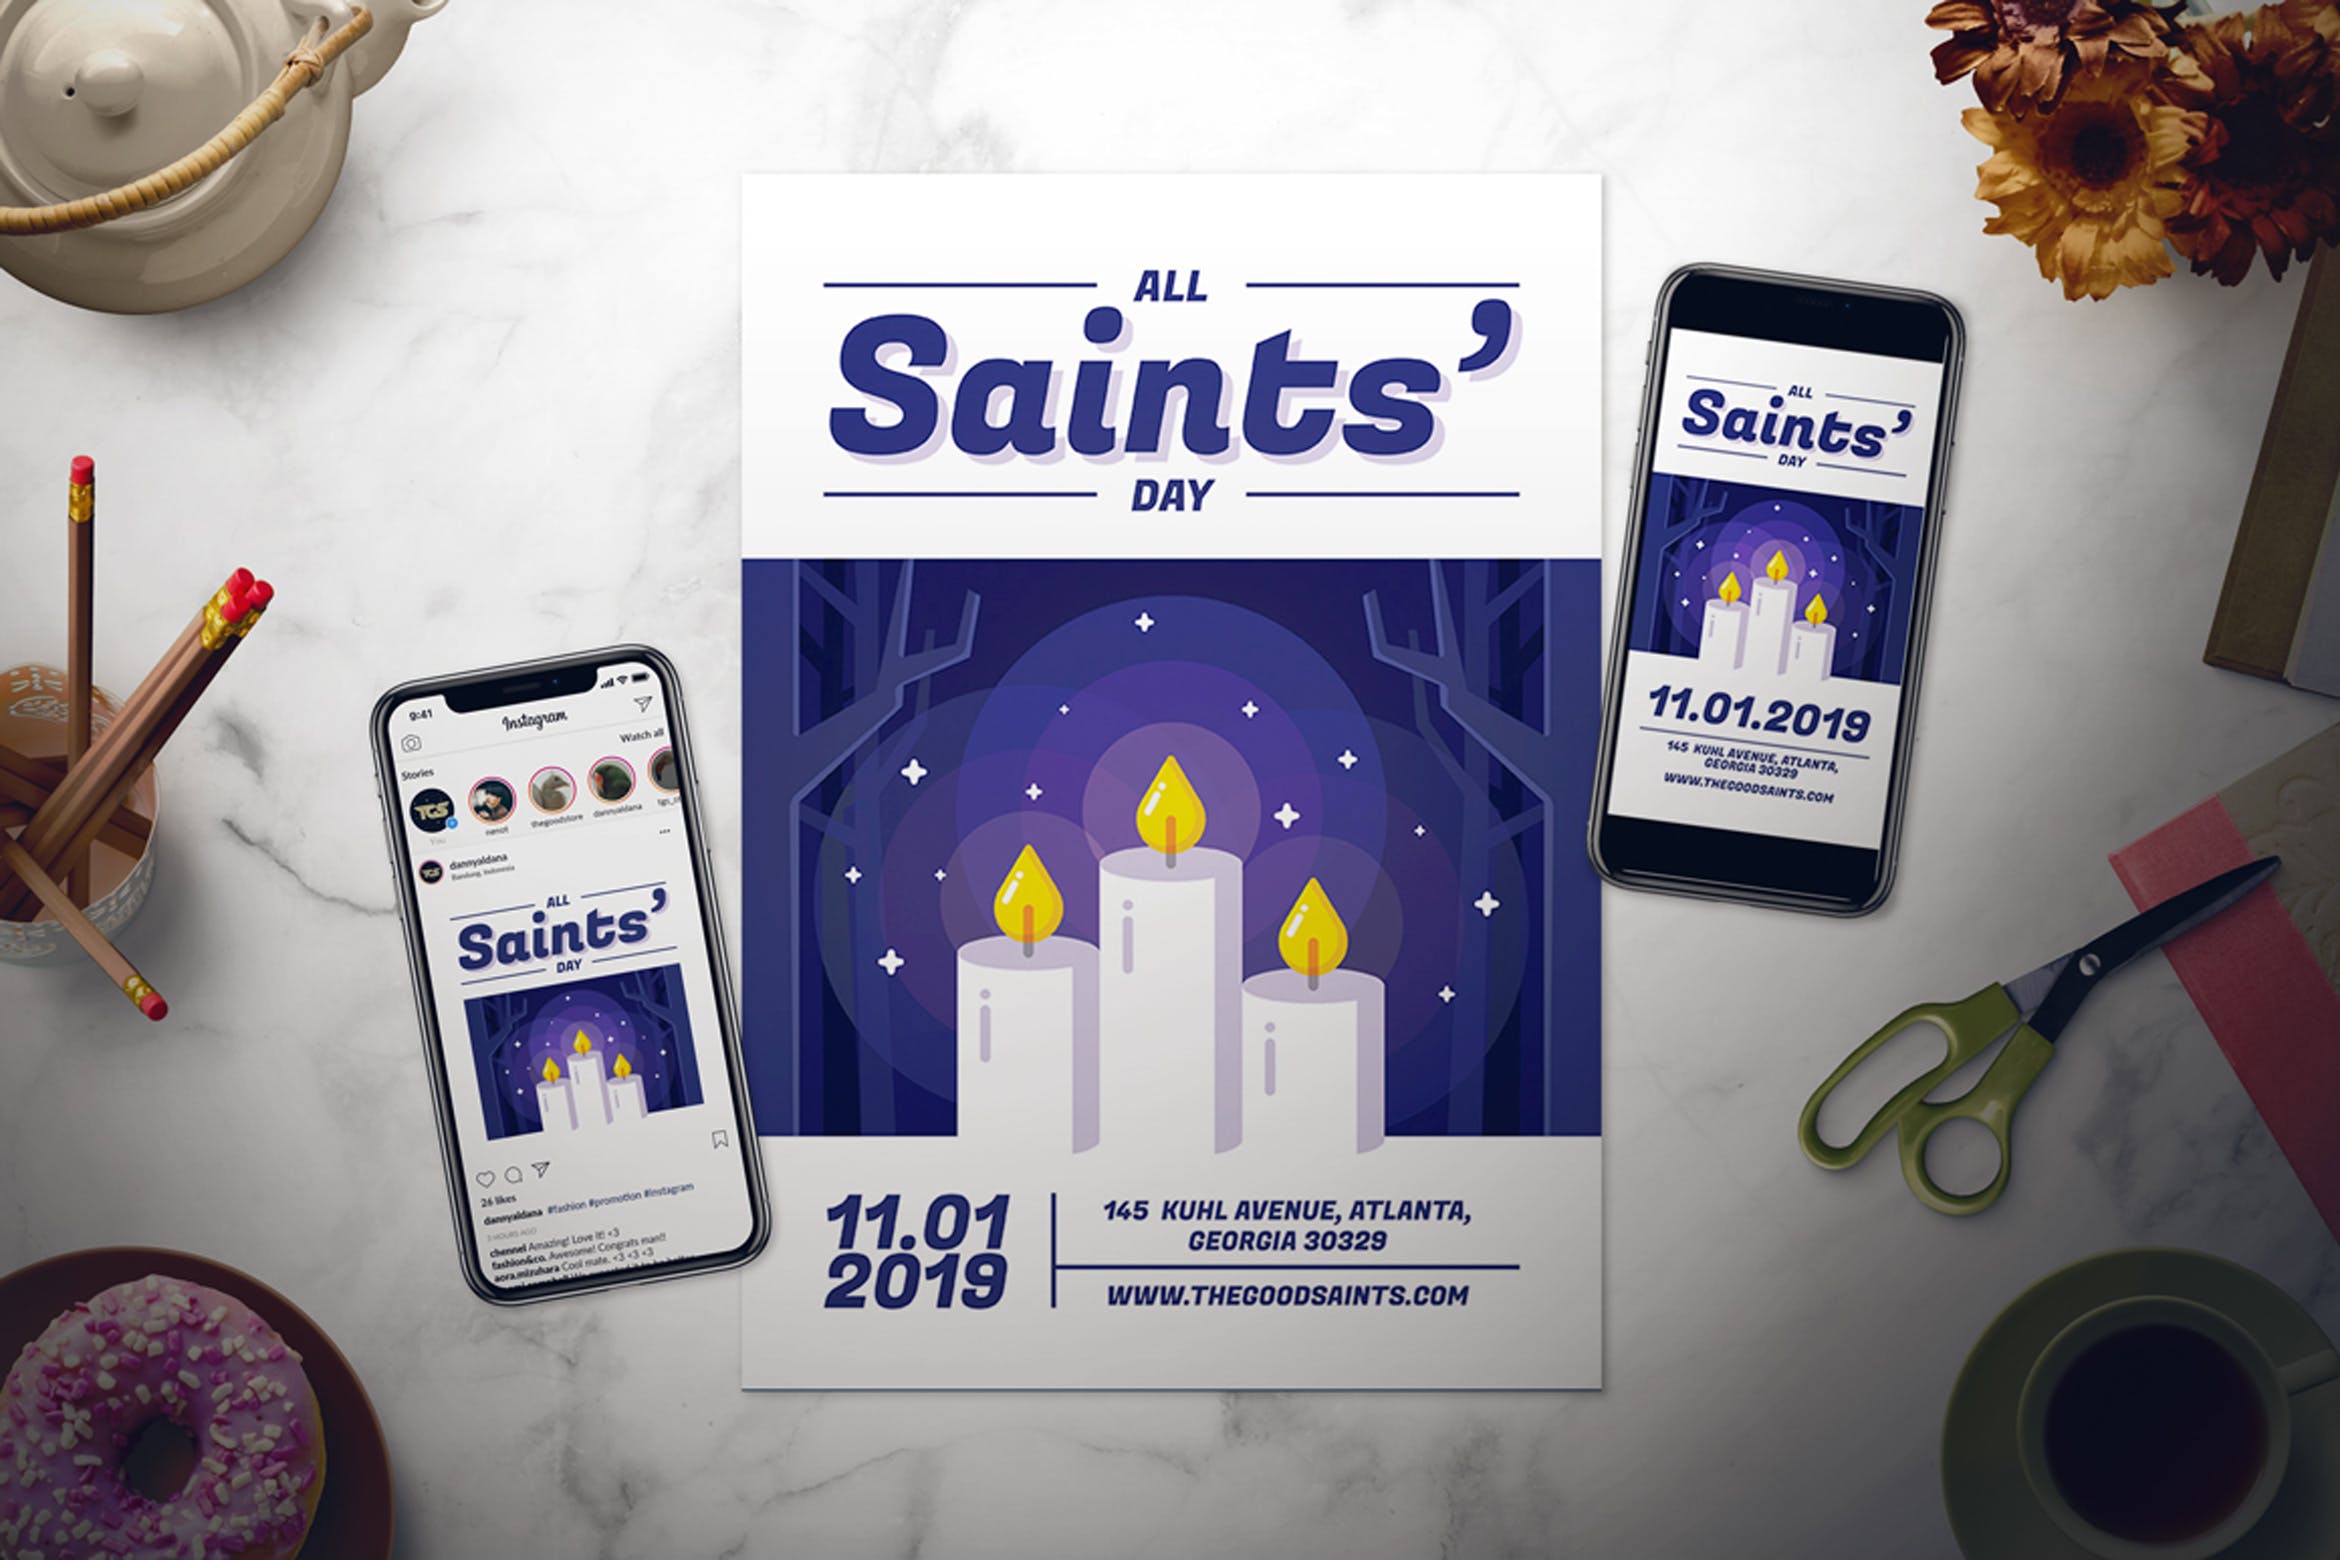 2019年万圣节主题活动海报设计模板 All Saints’ Day Flyer Set插图